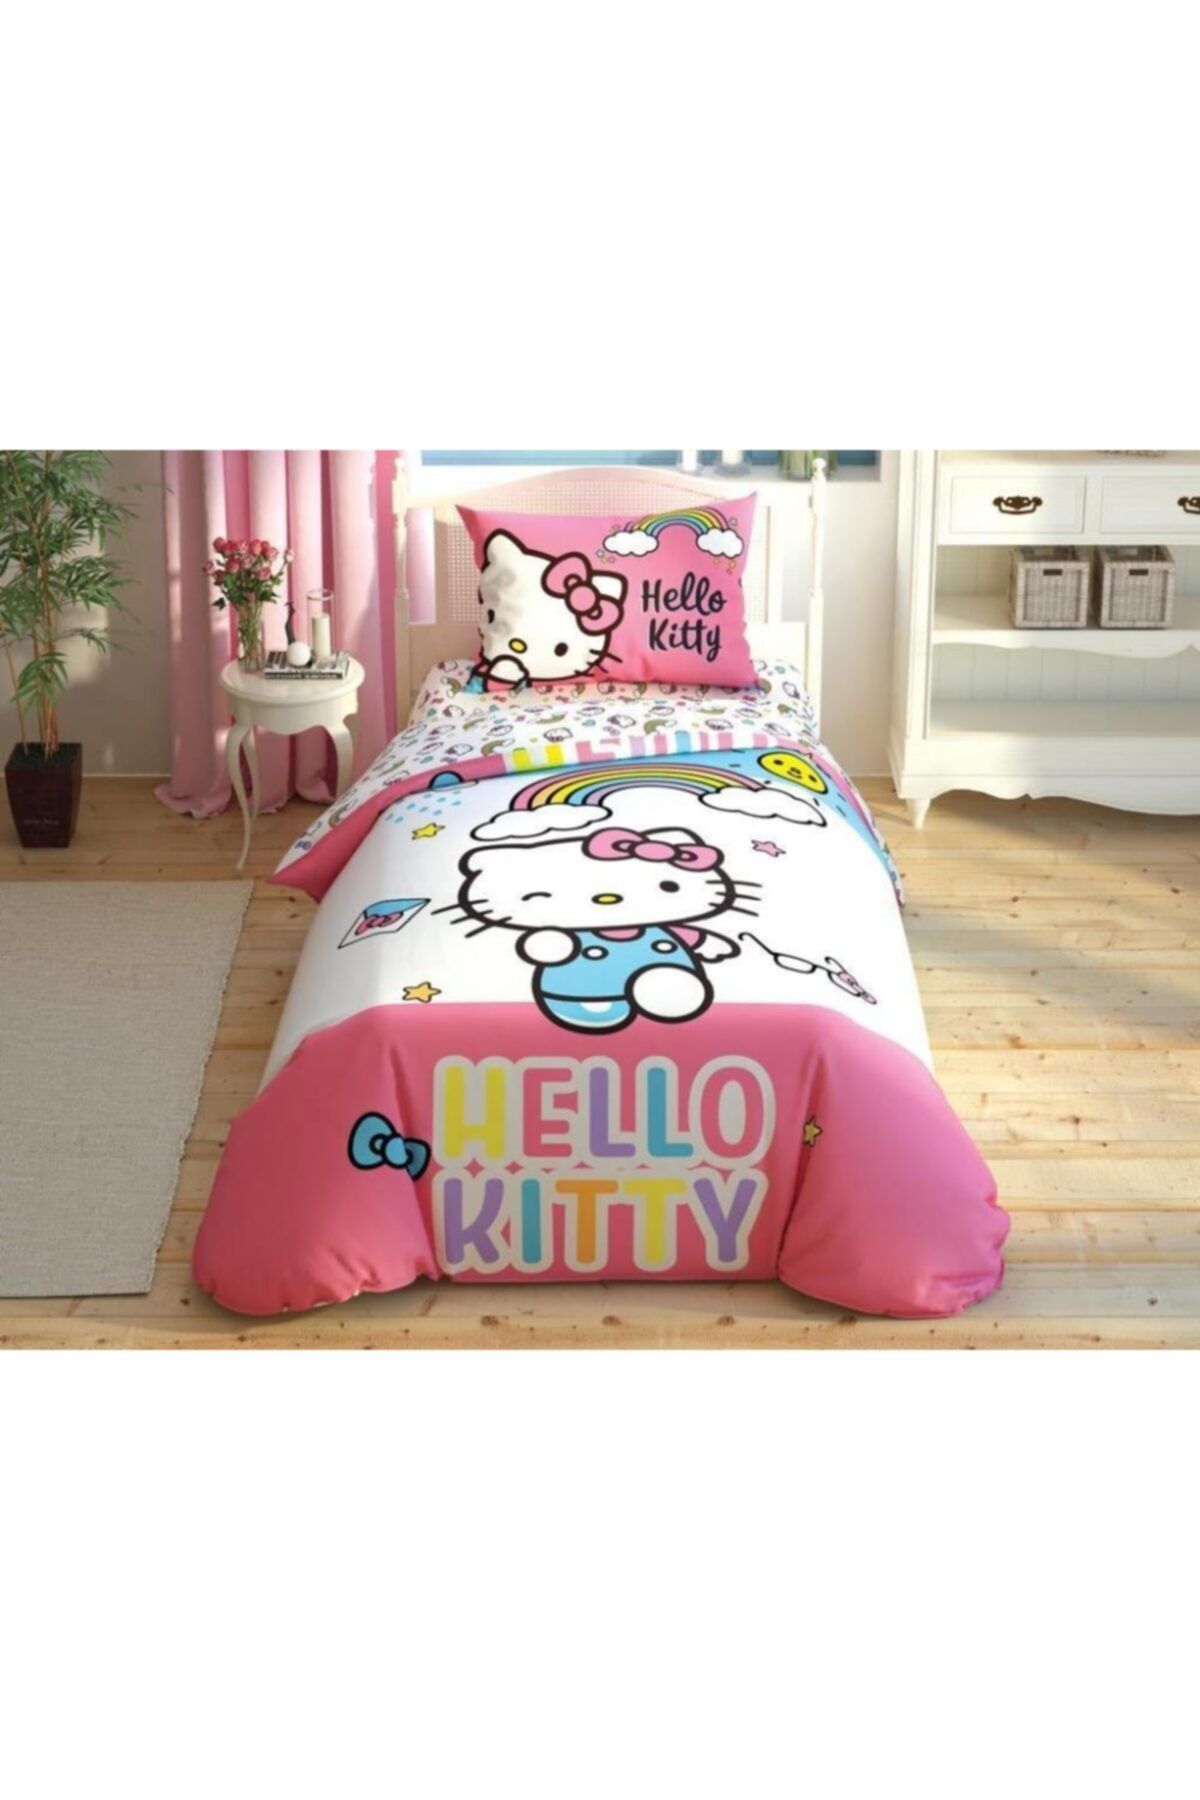 Taç Hello Kitty Rainbow Çarşafı Lastikli Pamuk Tek Kişilik Nevresim Takımı